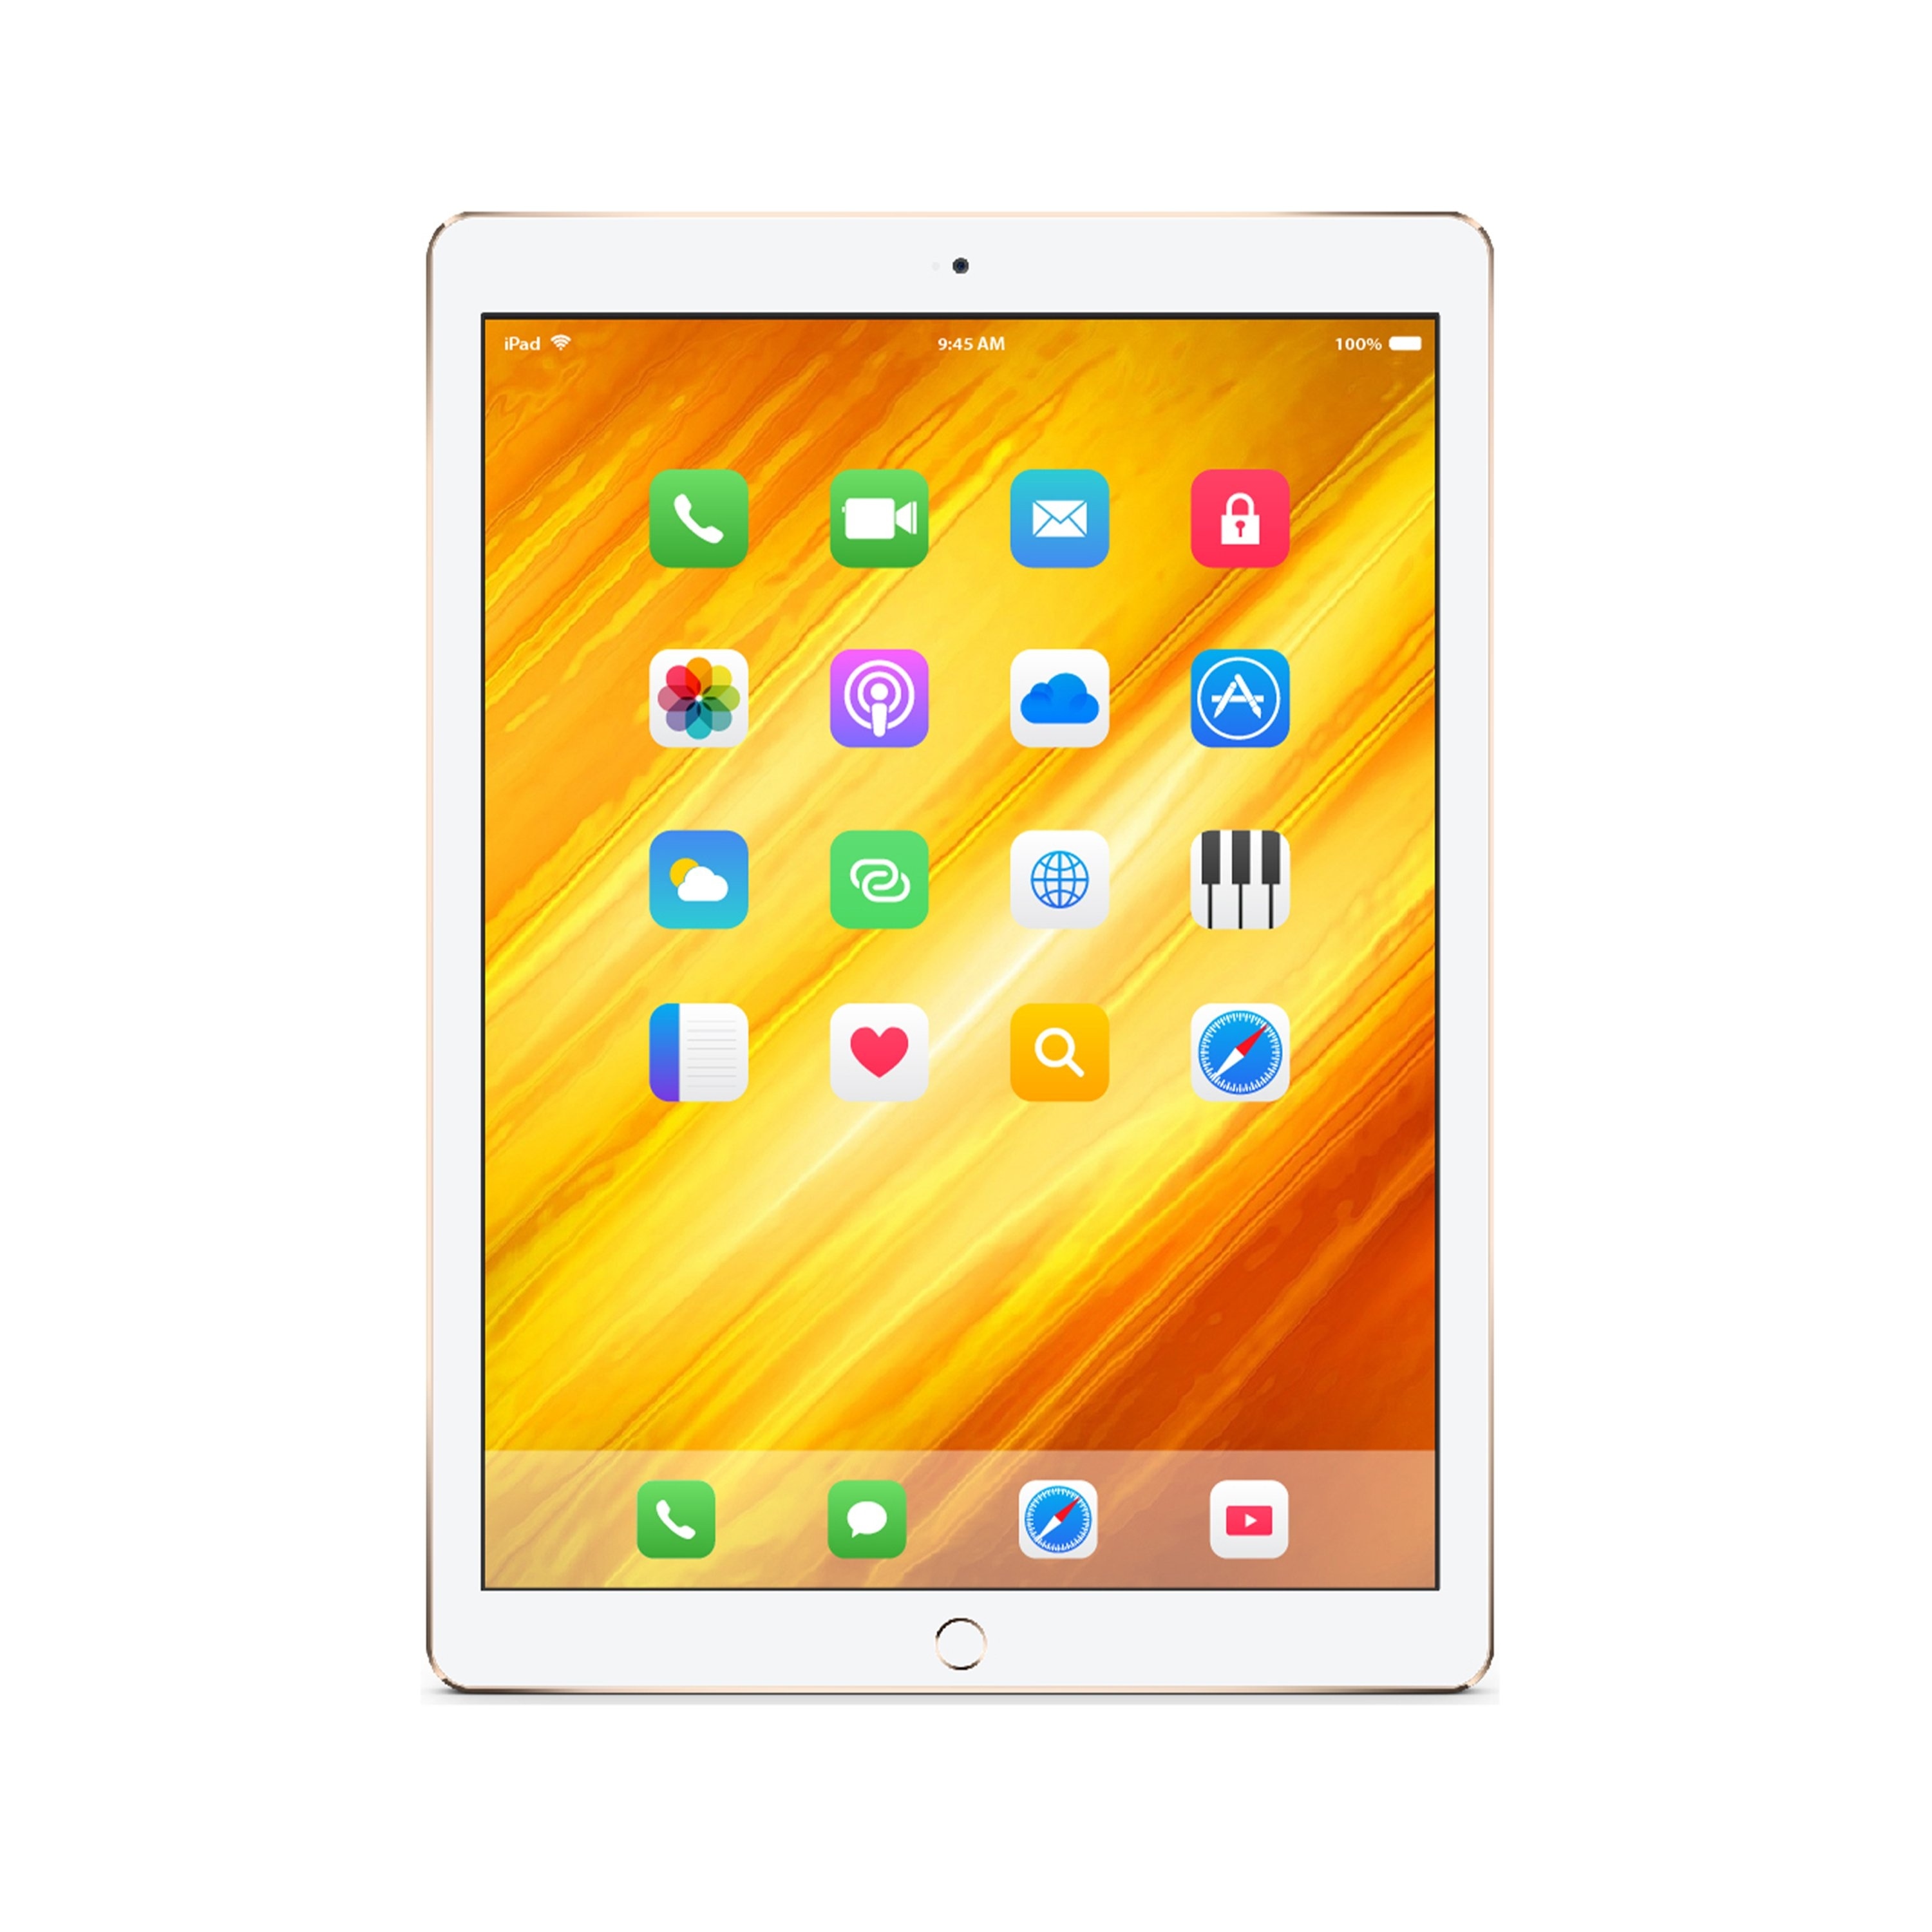 ホワイト系熱販売APPLE iPad IPAD WI-FI 32GB gold 第6世代 美品 